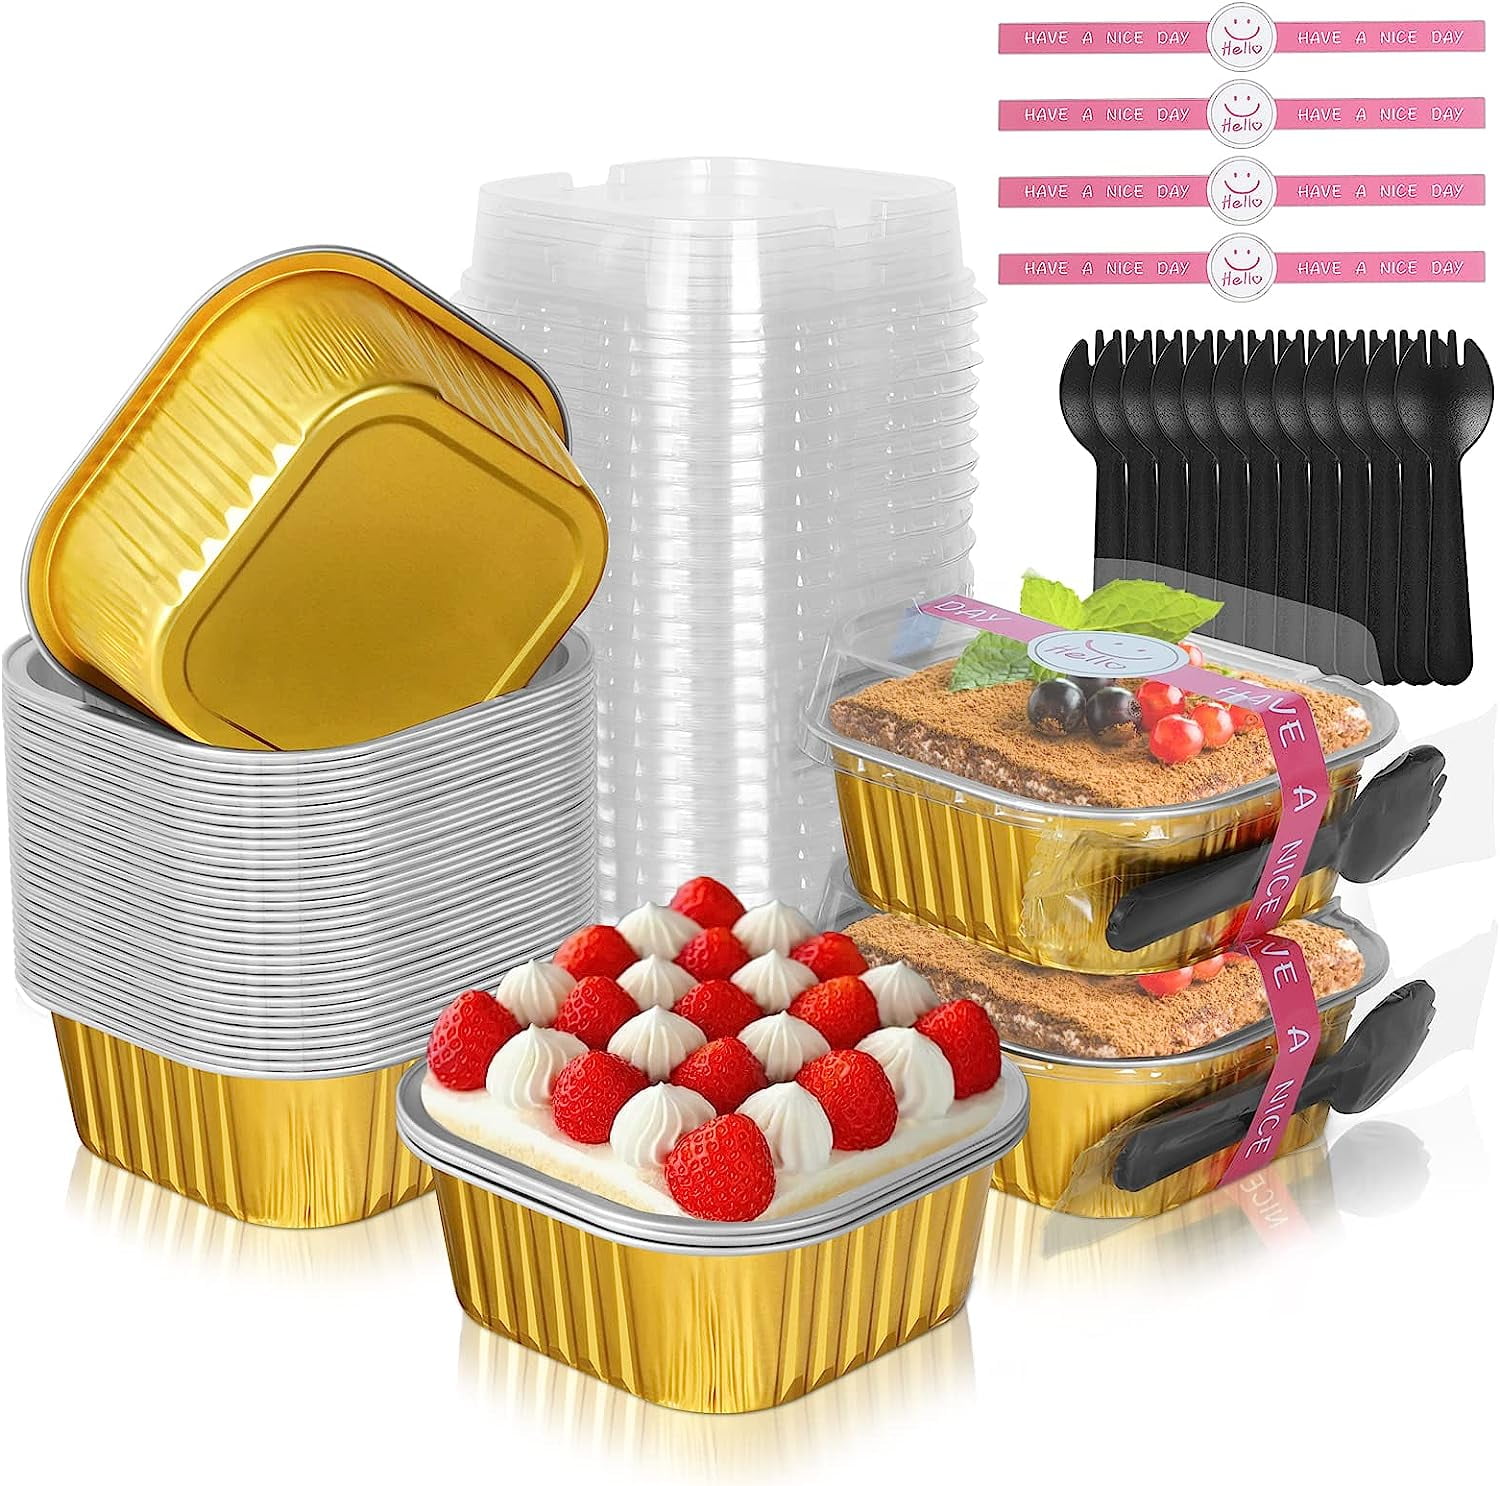 Disposable Aluminum Foil Cupspcs 4oz Mini Cake Pans With Lids 50